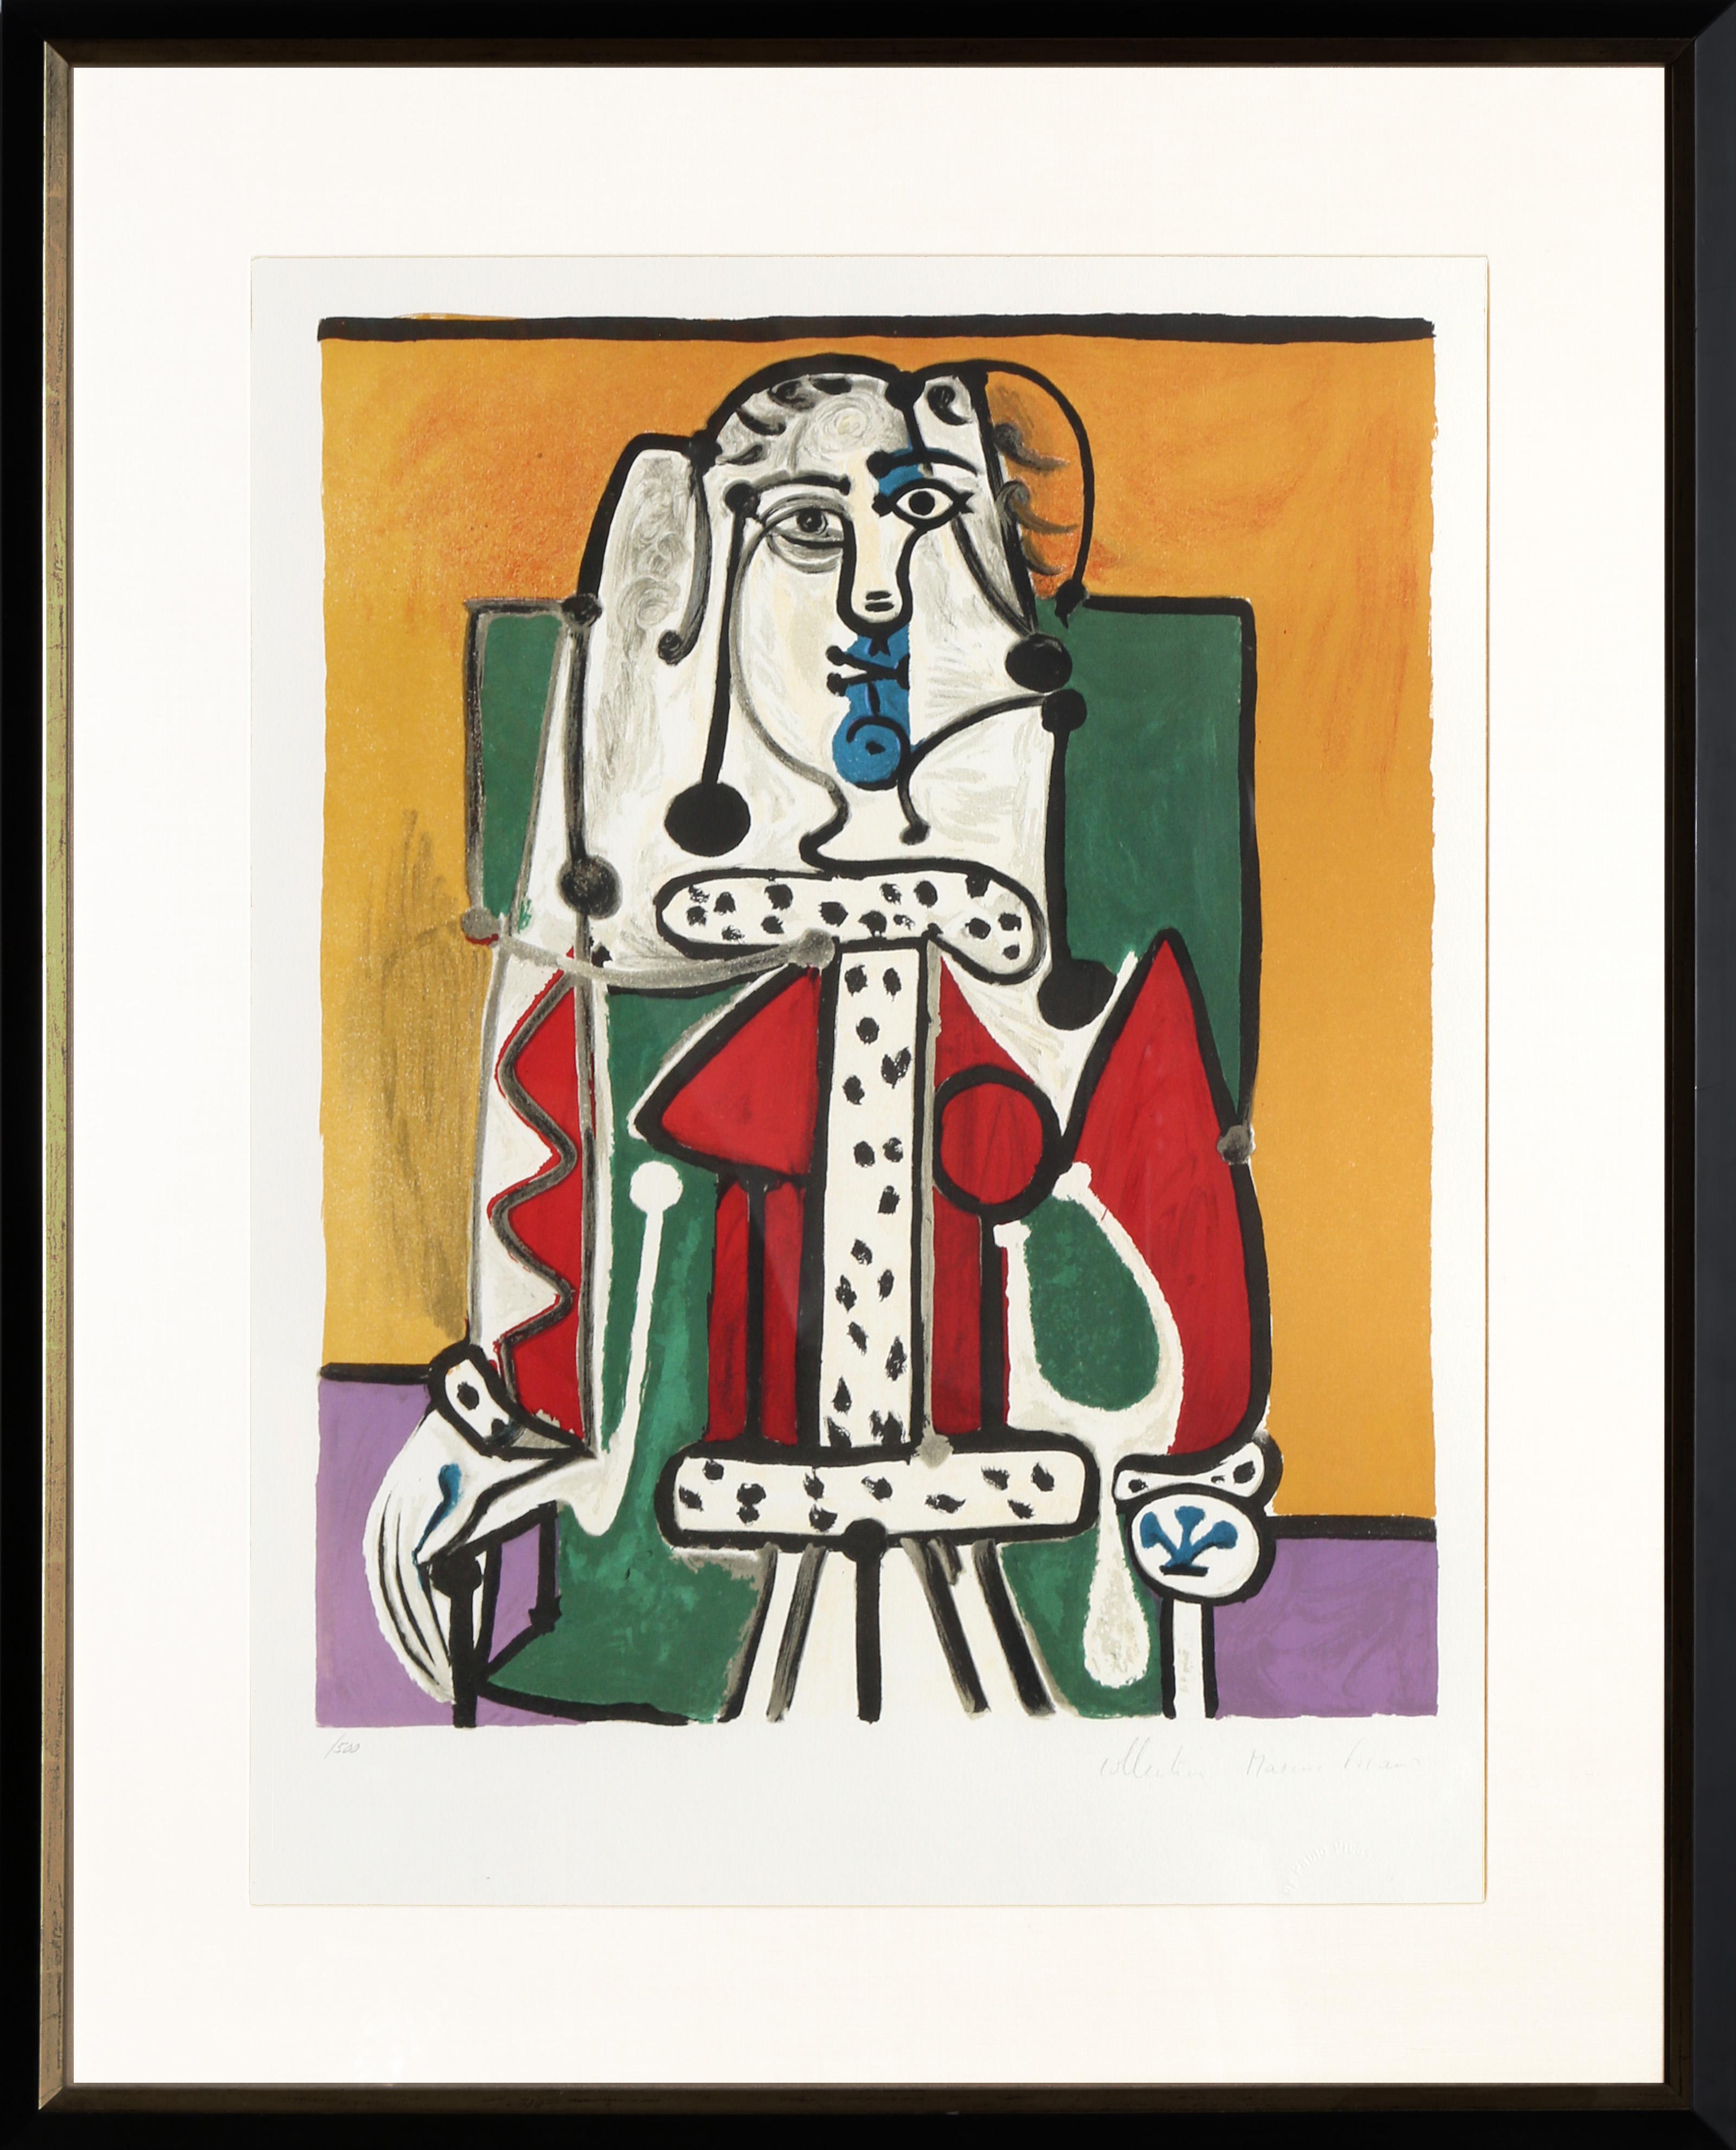 Une lithographie provenant de la Collection SALE de Marina Picasso d'après le tableau de Pablo Picasso "Femme dans un Fauteuil", qui a récemment été vendu aux enchères pour 10 millions de dollars américains. La peinture originale a été achevée en